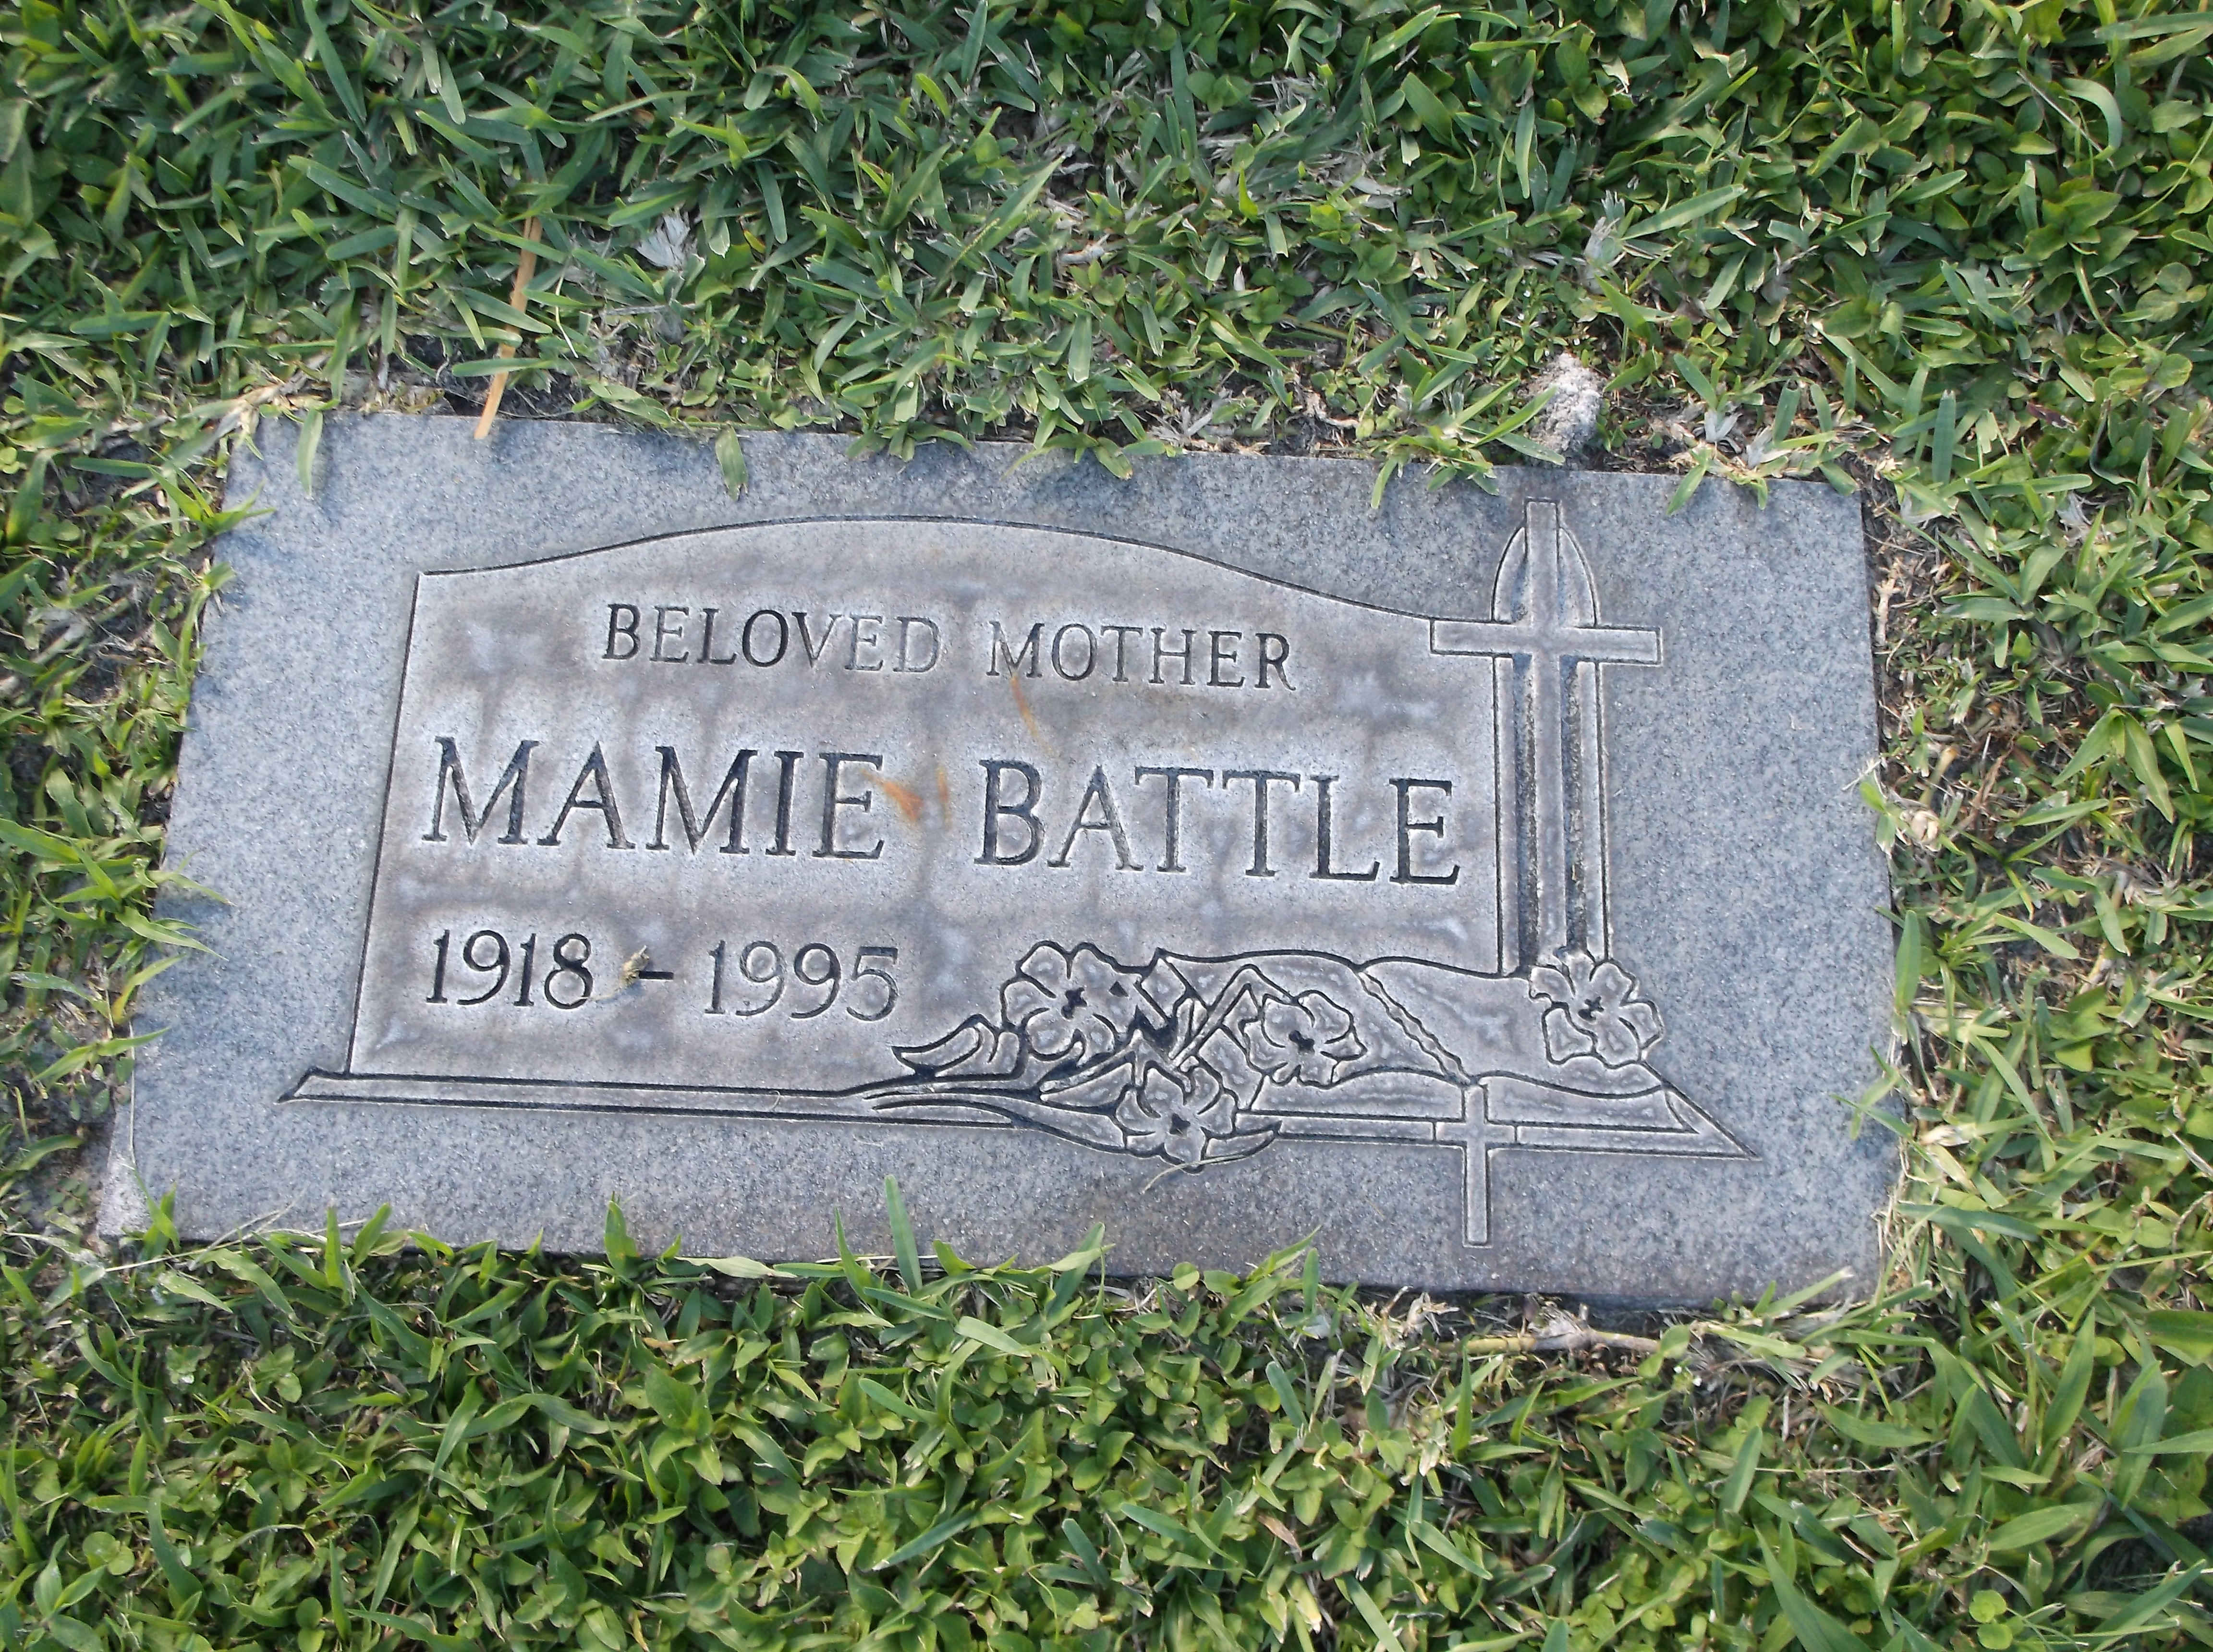 Mamie Battle